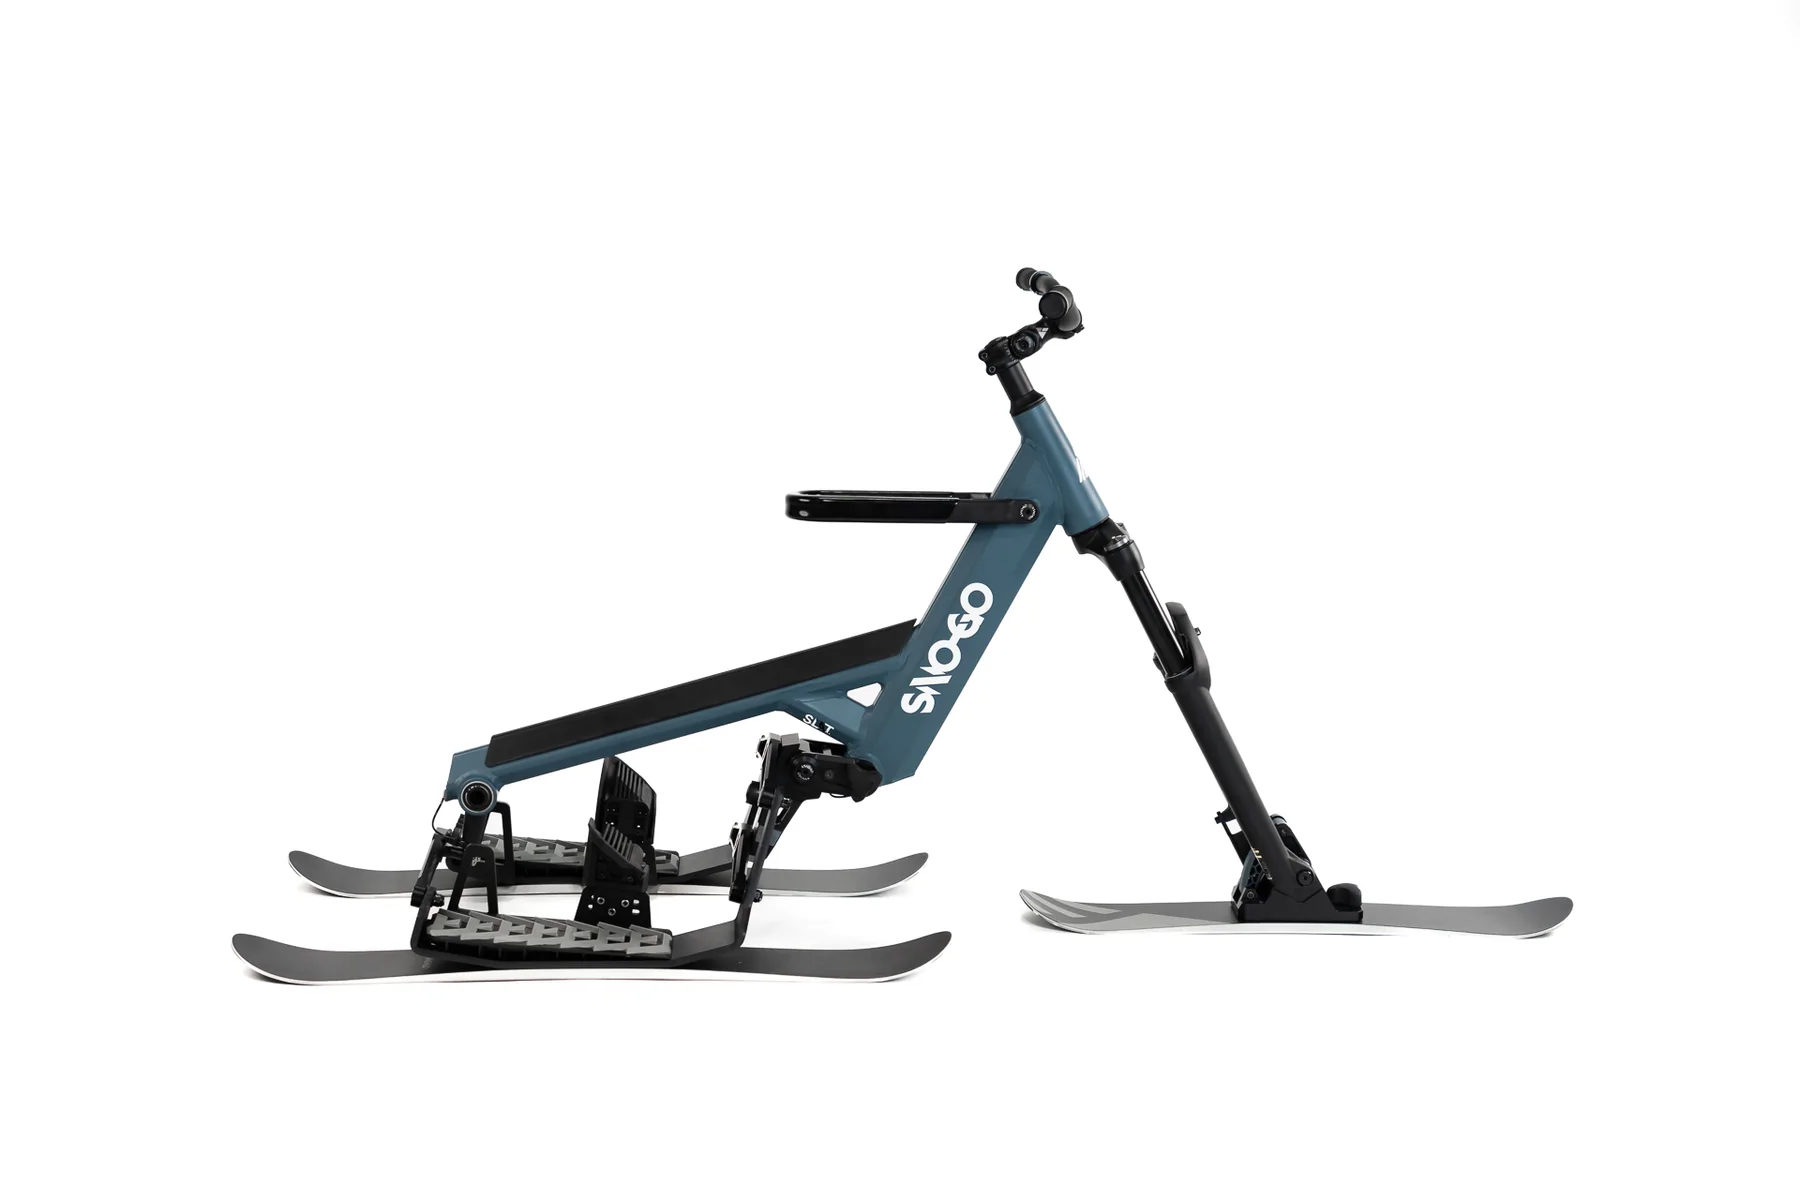 SNO-GO SHIFT Snowbike / Skibike. The stable ski bike model with 3 skis ...